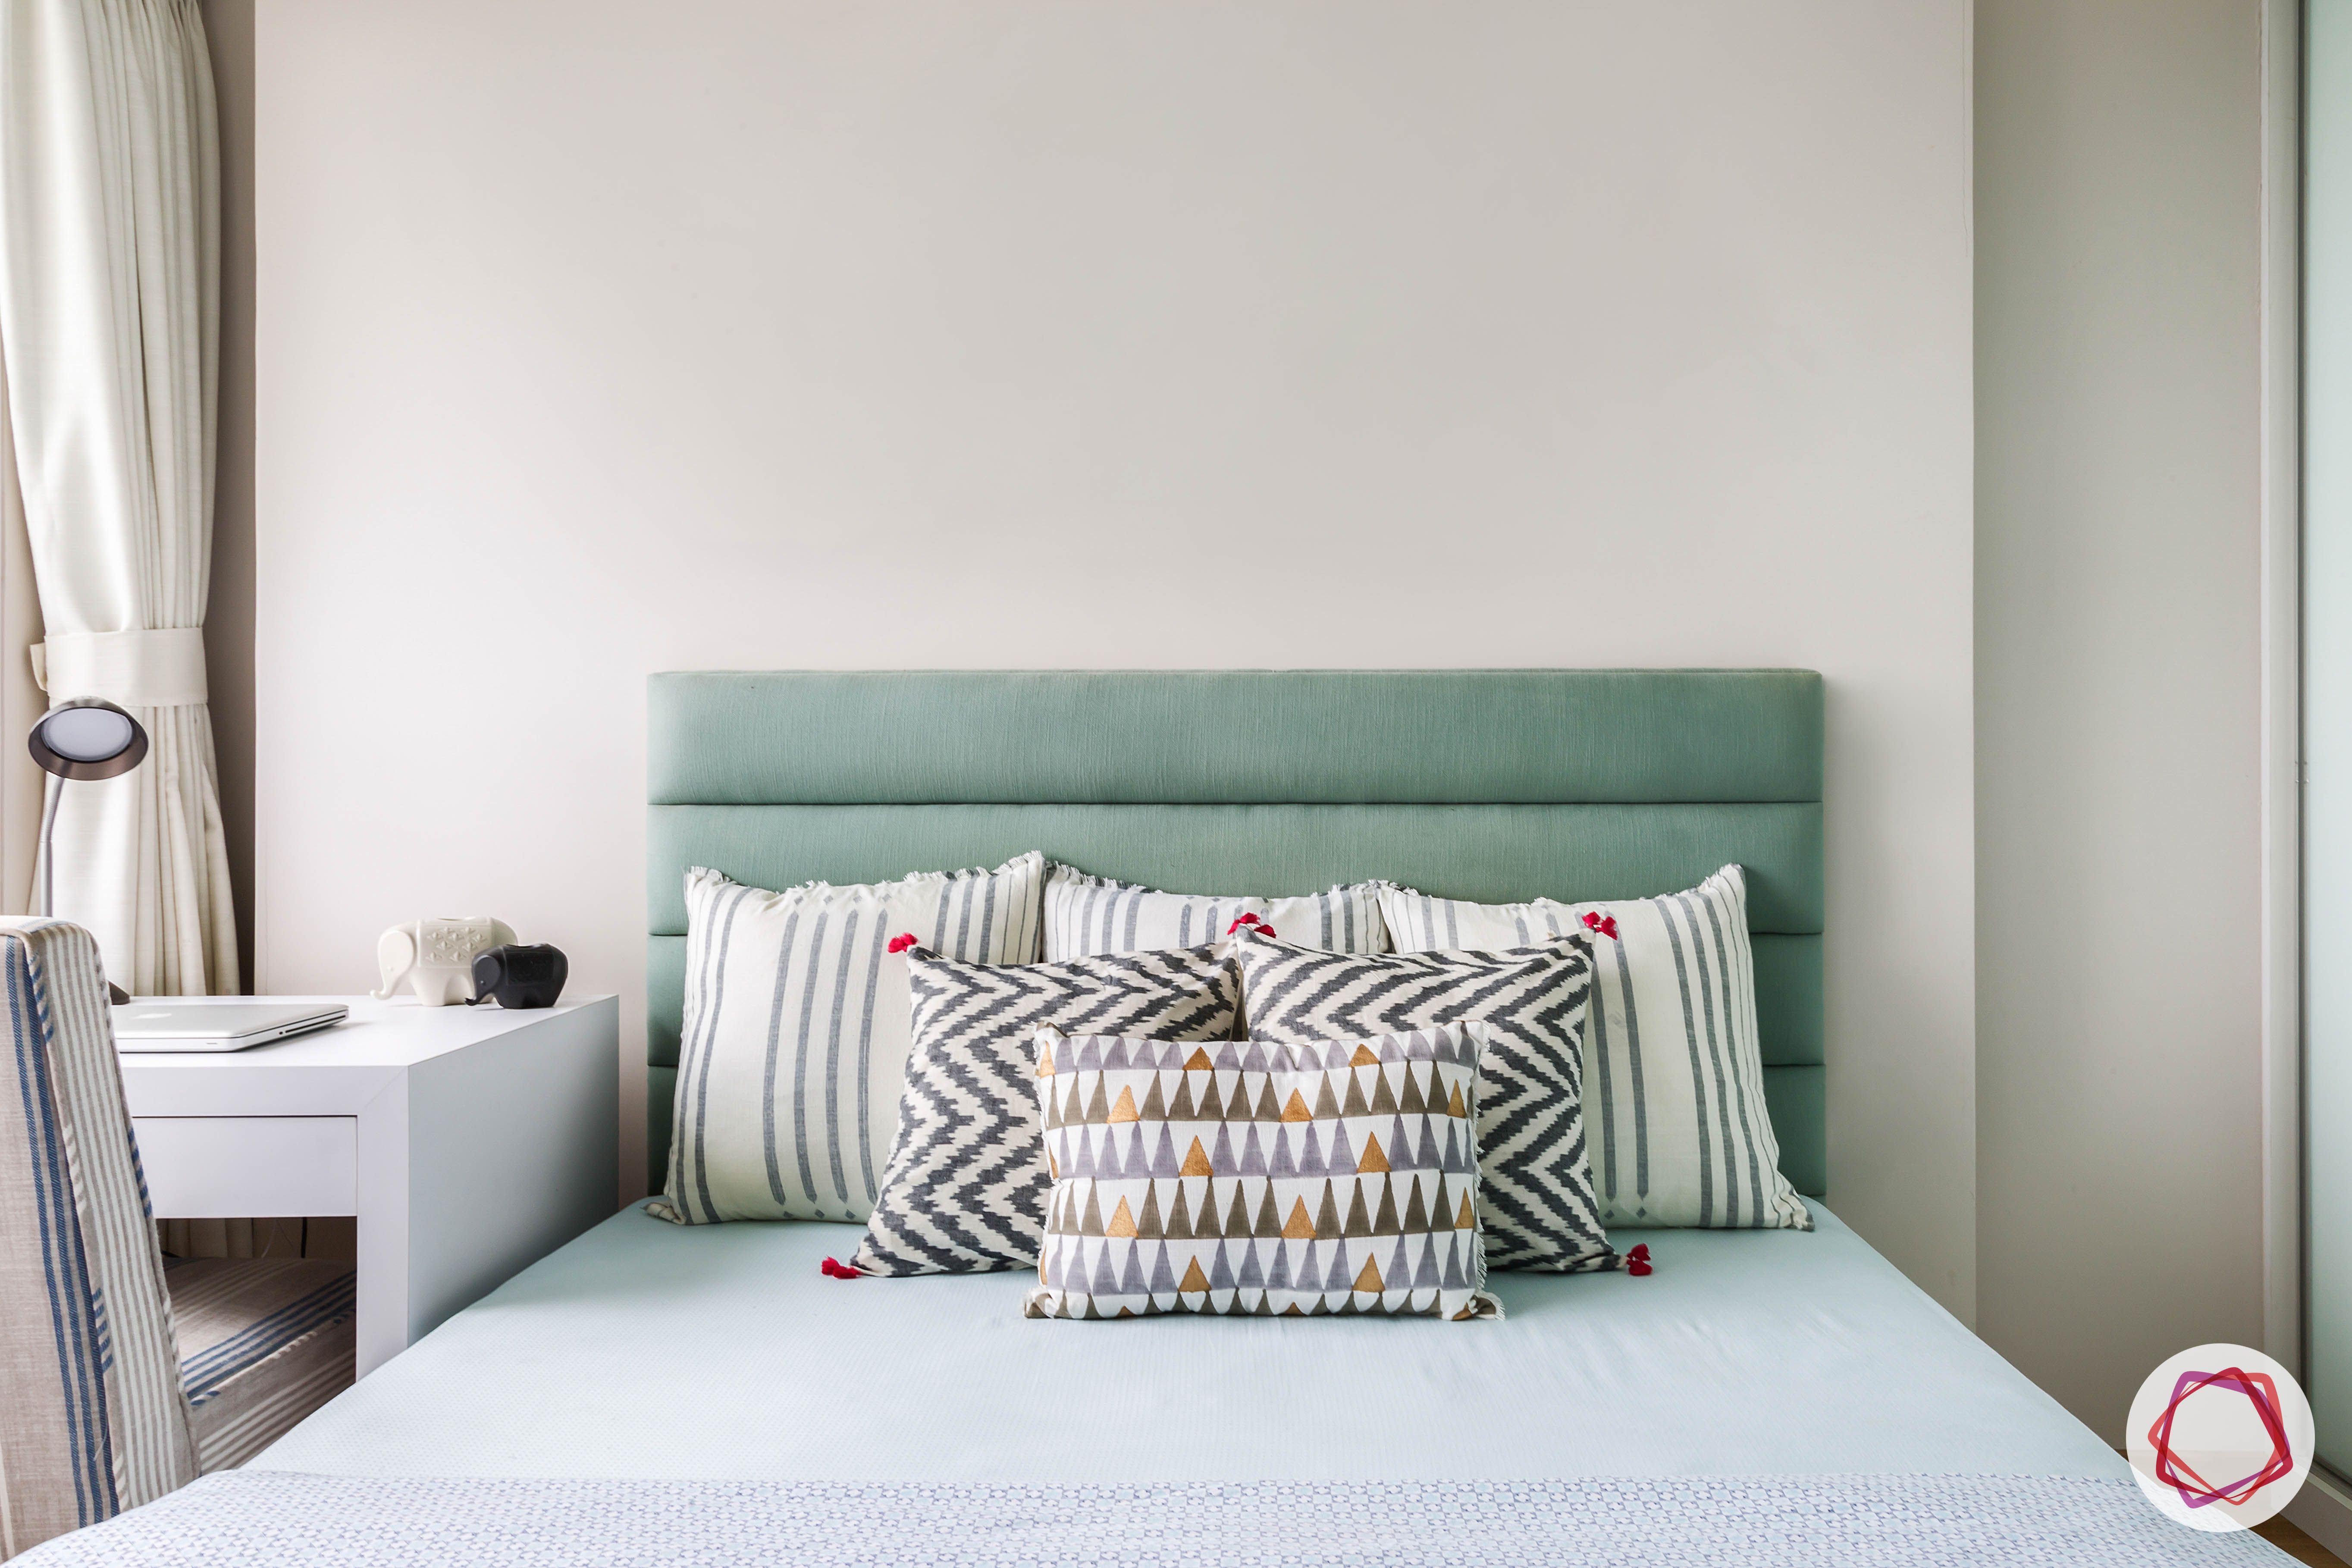 lodha group-simple bedroom designs-blue bedroom design-headboard designs